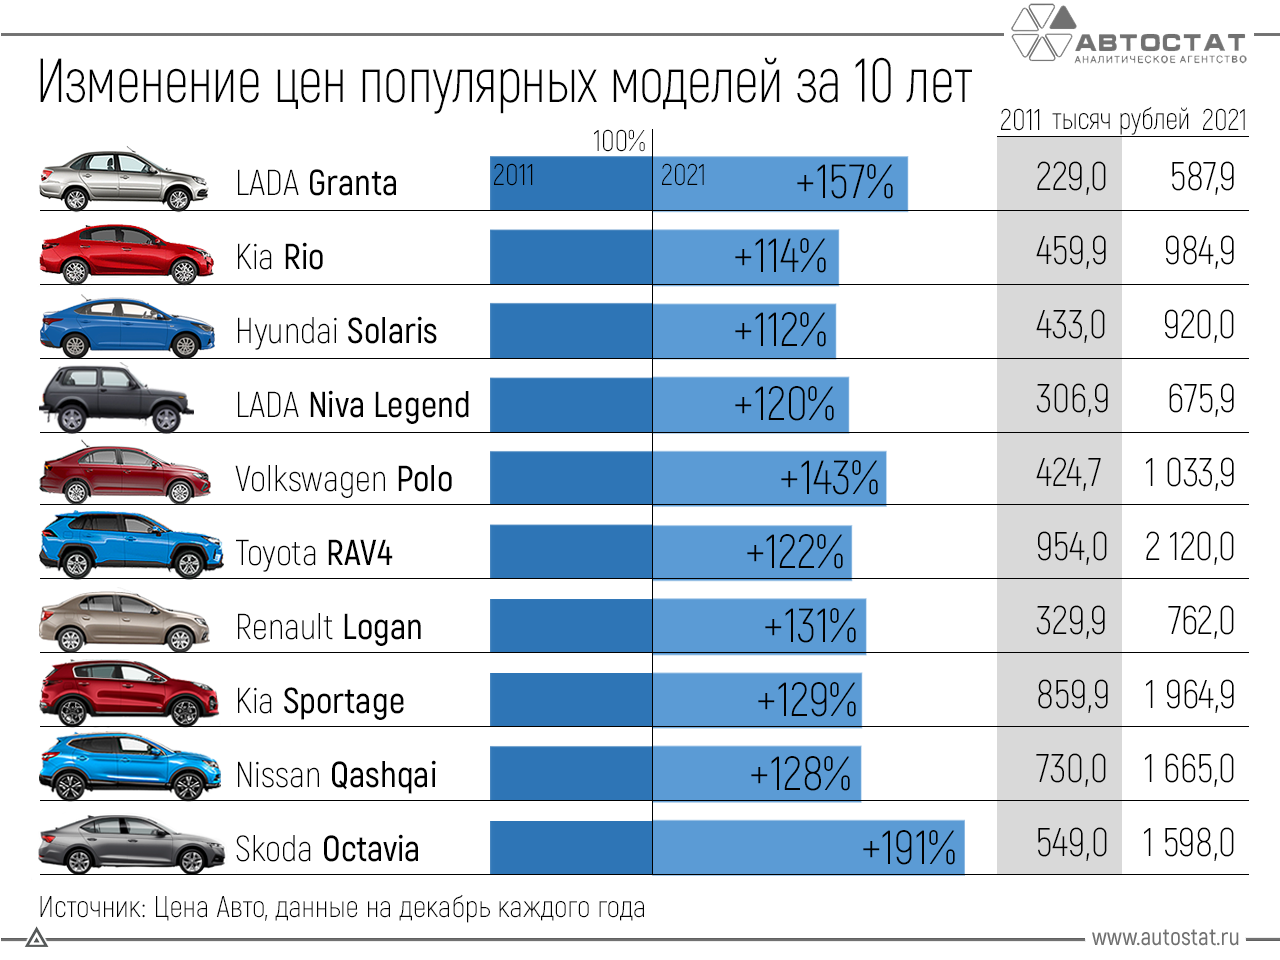 Бестселлеры российского автомобильного рынка подорожали в 2-3 раза за последние 10 лет